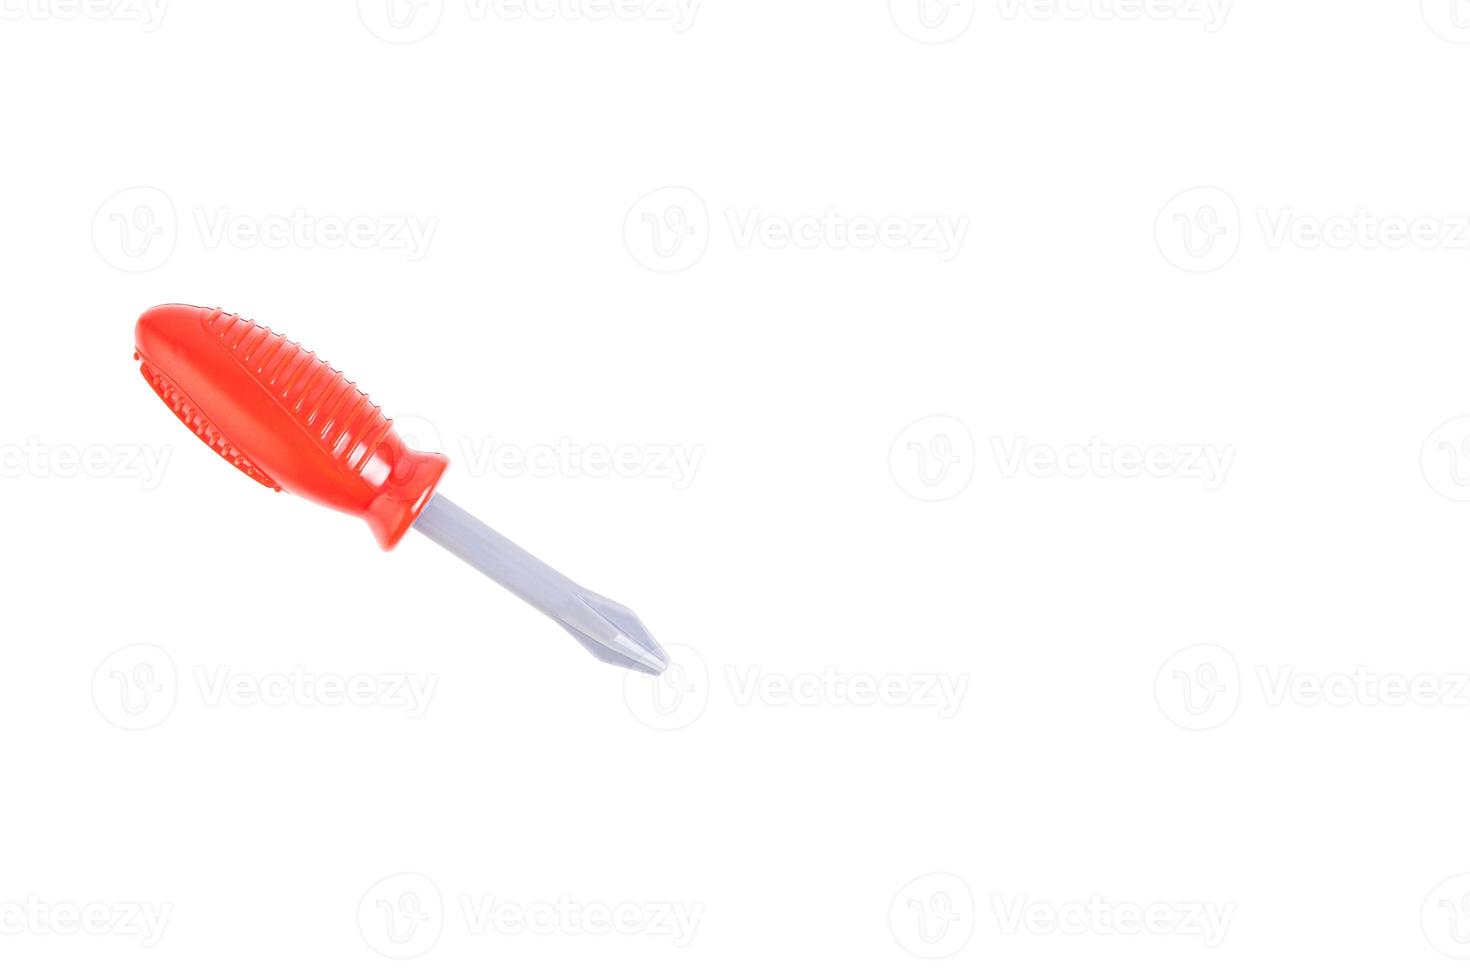 chave de fenda, chave de fenda de plástico de brinquedo com alça vermelha, ferramenta infantil. fundo branco isolado. foto